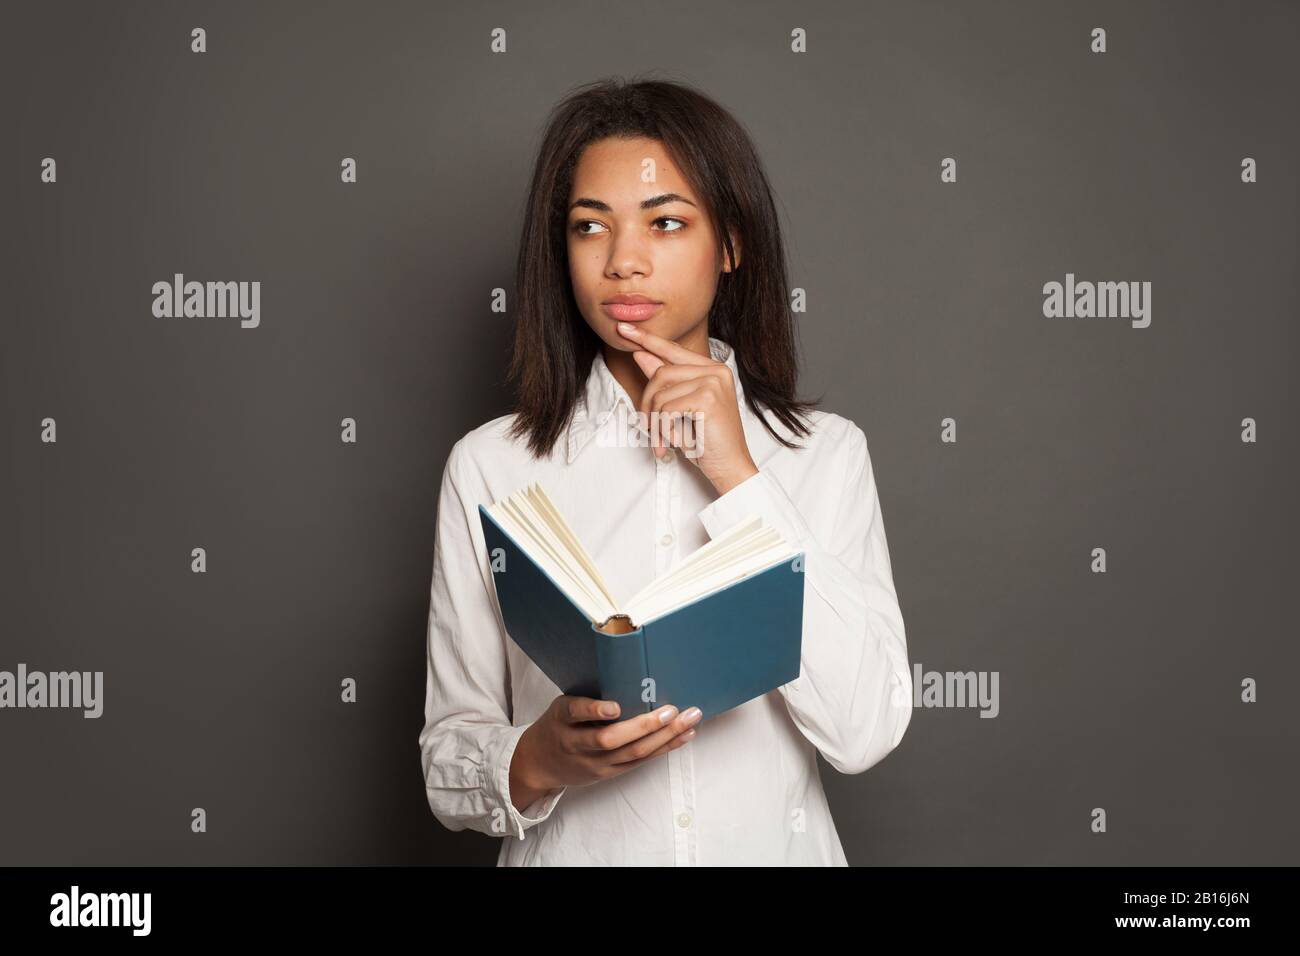 Pensée mixte race ethnicité femme noire étudiant en chemise blanche avec livre sur fond gris Banque D'Images